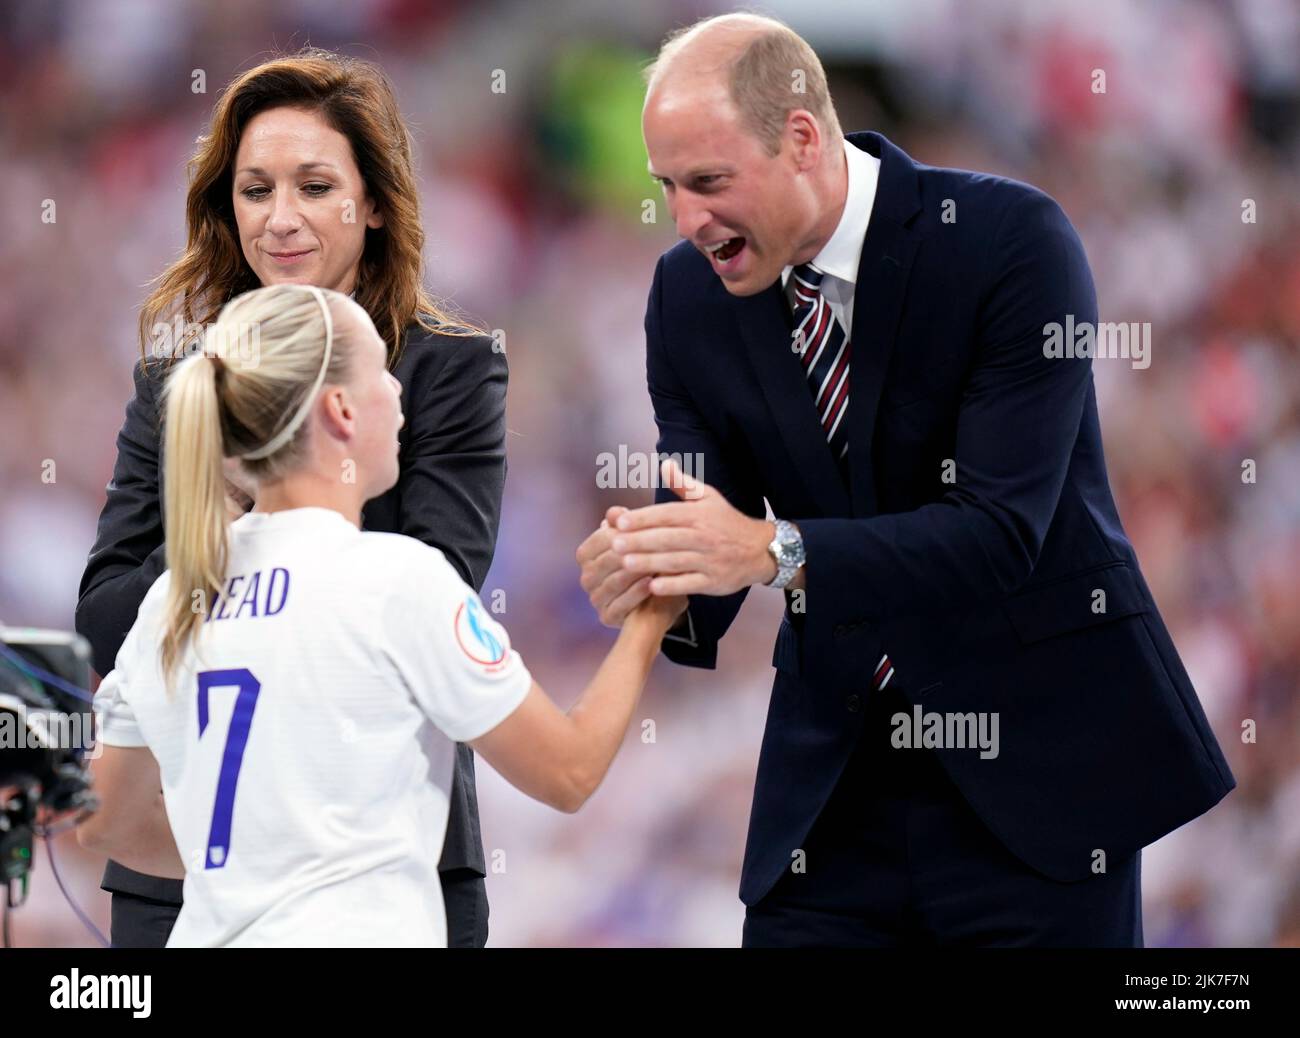 El duque de Cambridge felicita a Beth Mead de Inglaterra junto con Nadine Kessler (izquierda), jefa de fútbol femenino de la UEFA, tras la final de la UEFA Euro 2022 Femenina en el estadio de Wembley, Londres. Fecha de la foto: Domingo 31 de julio de 2022. Foto de stock